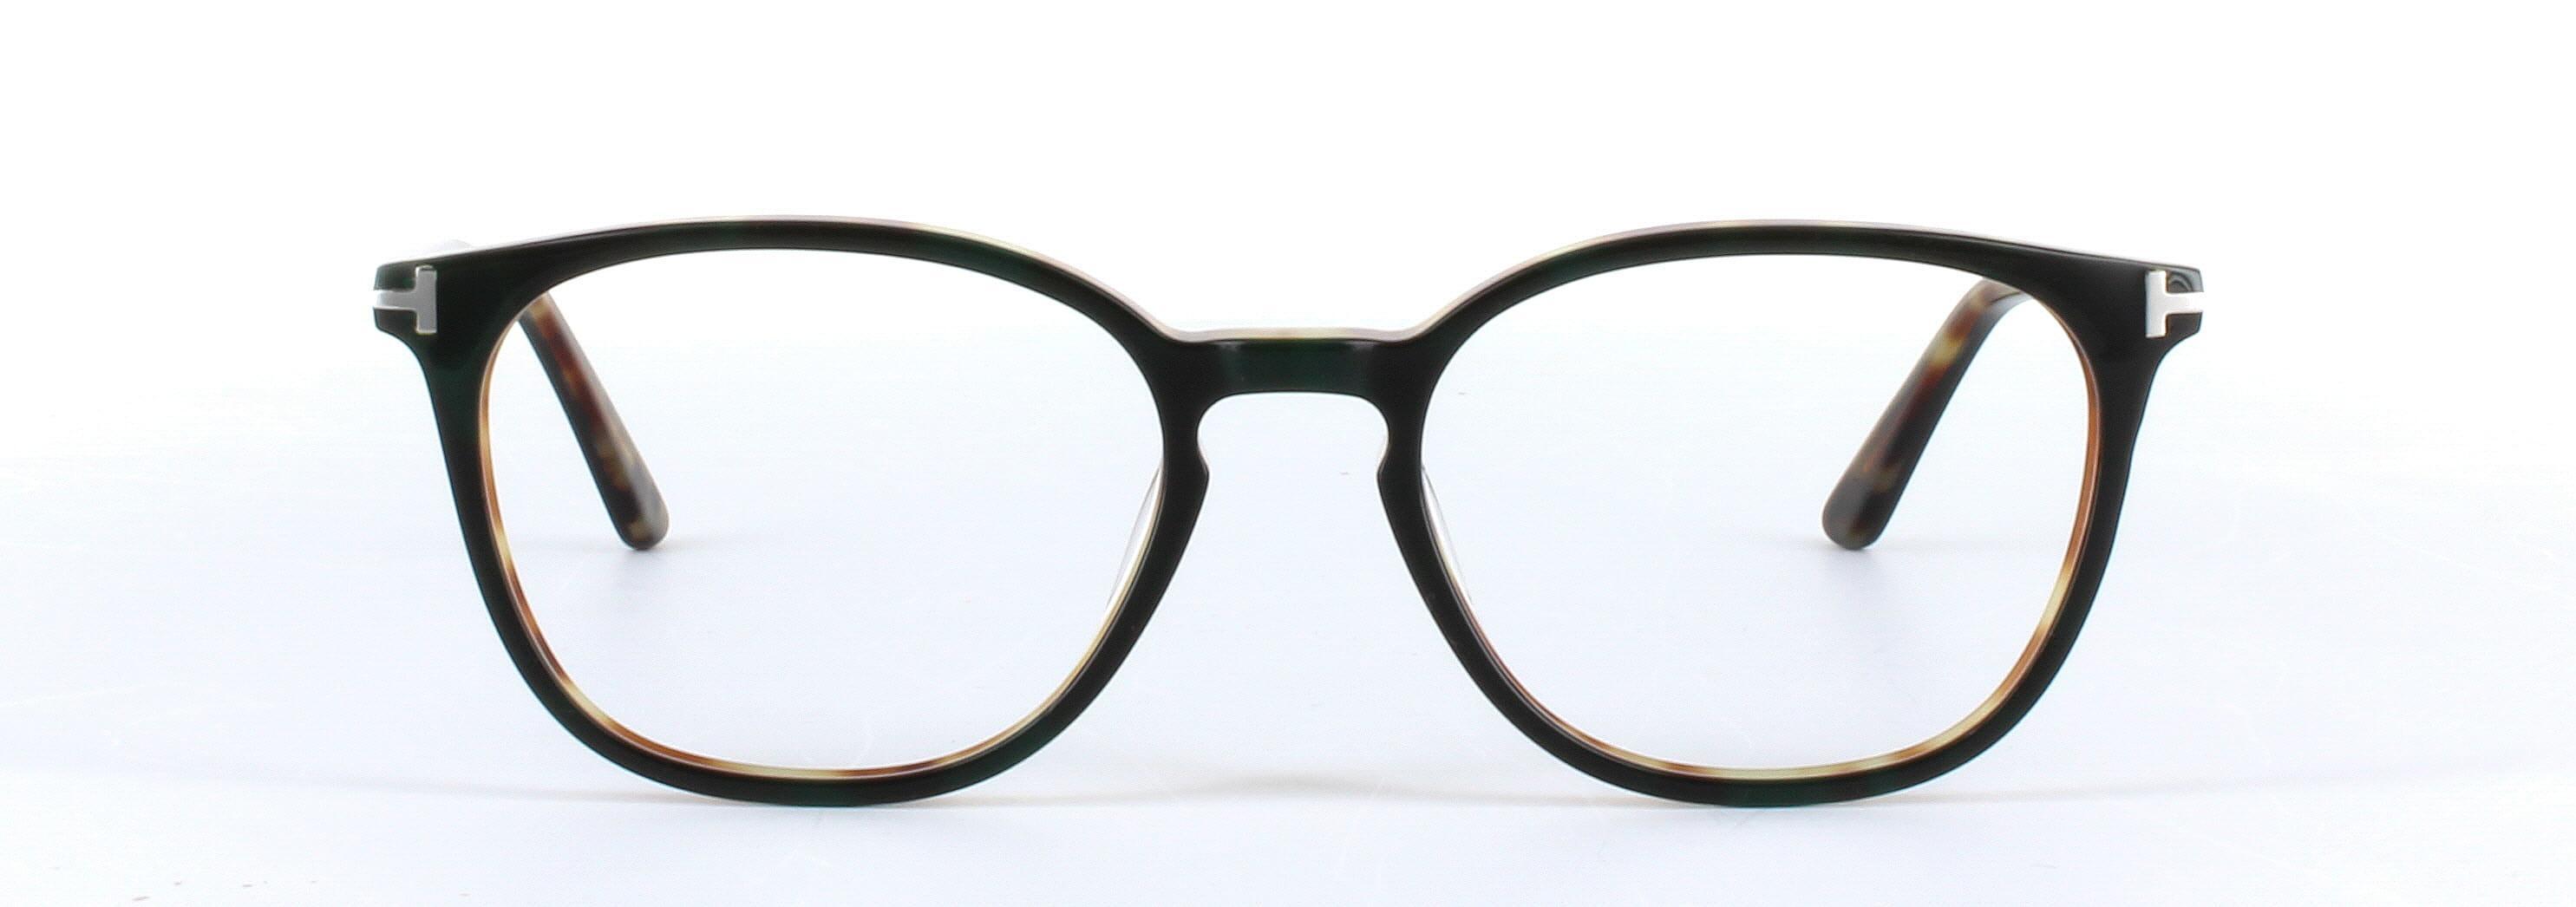 Hazar Dark Brown Full Rim Oval Acetate Glasses - Image View 5